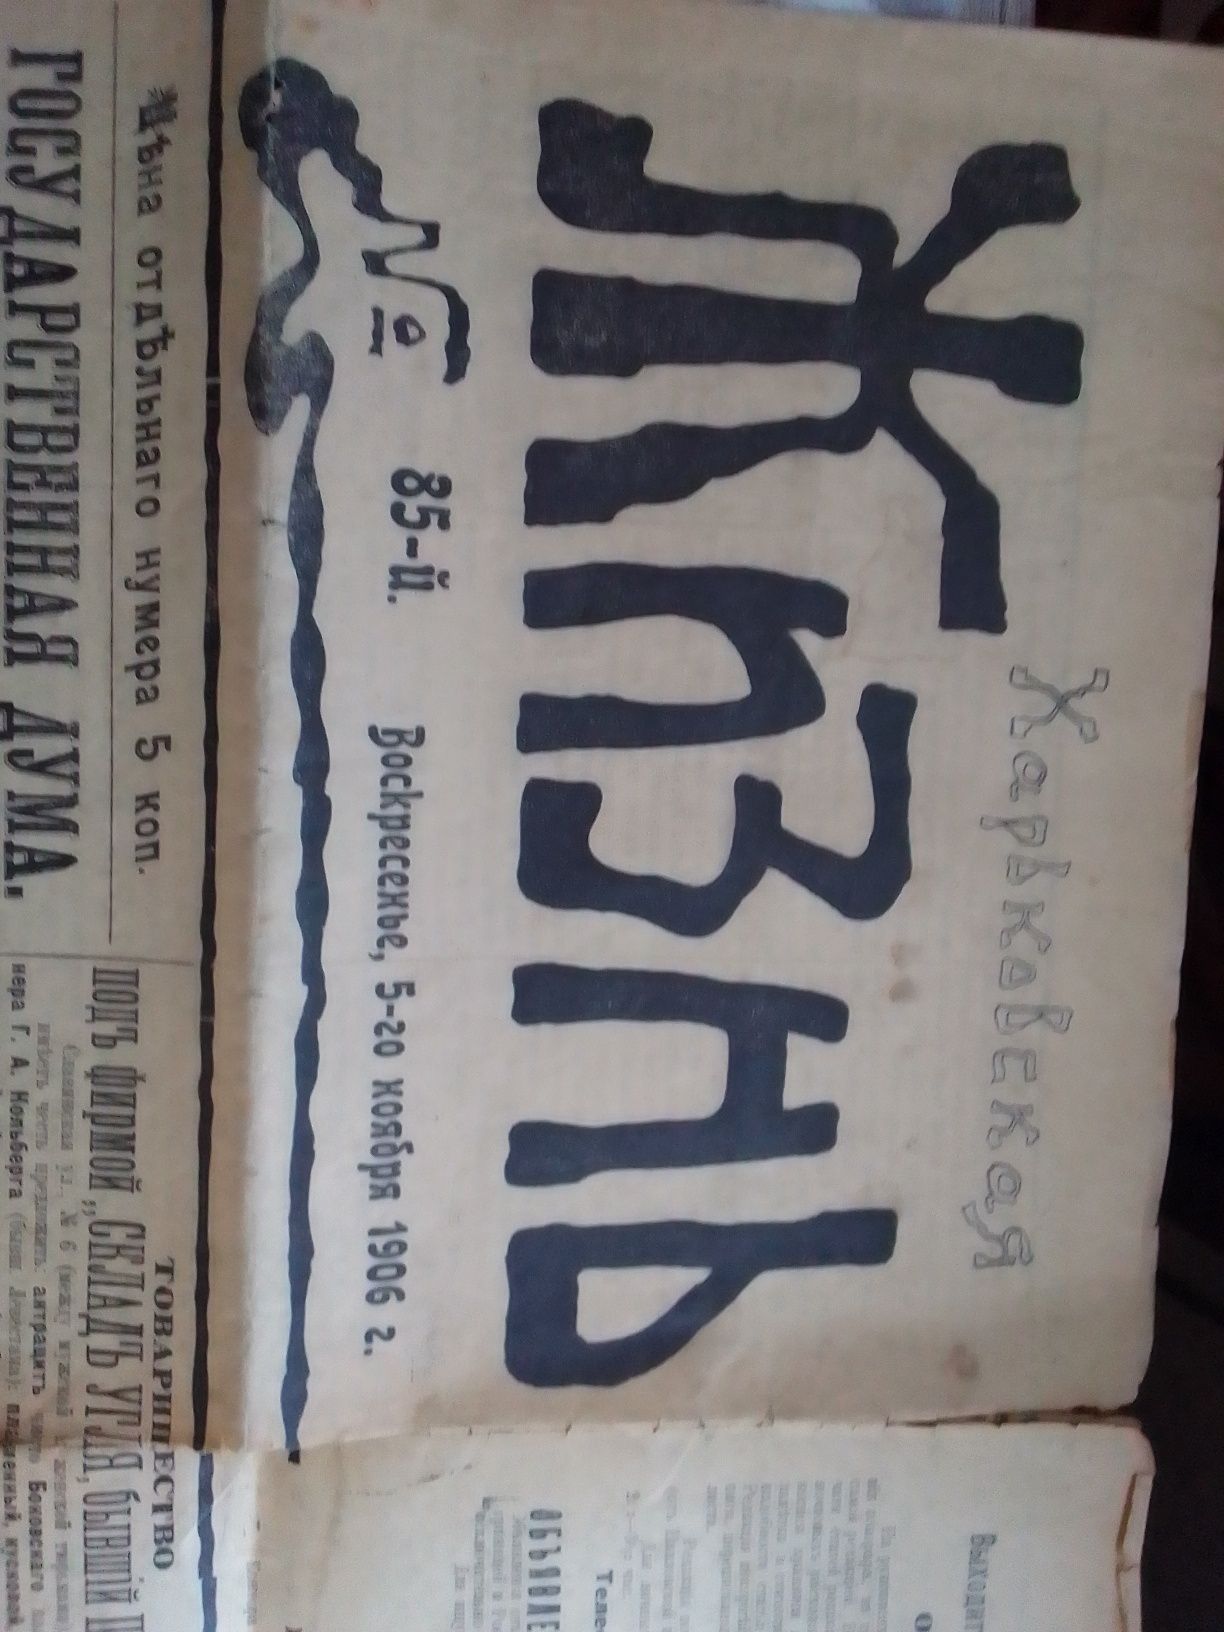 Продам газету 1906 года выпуска, Харьковская жизнь